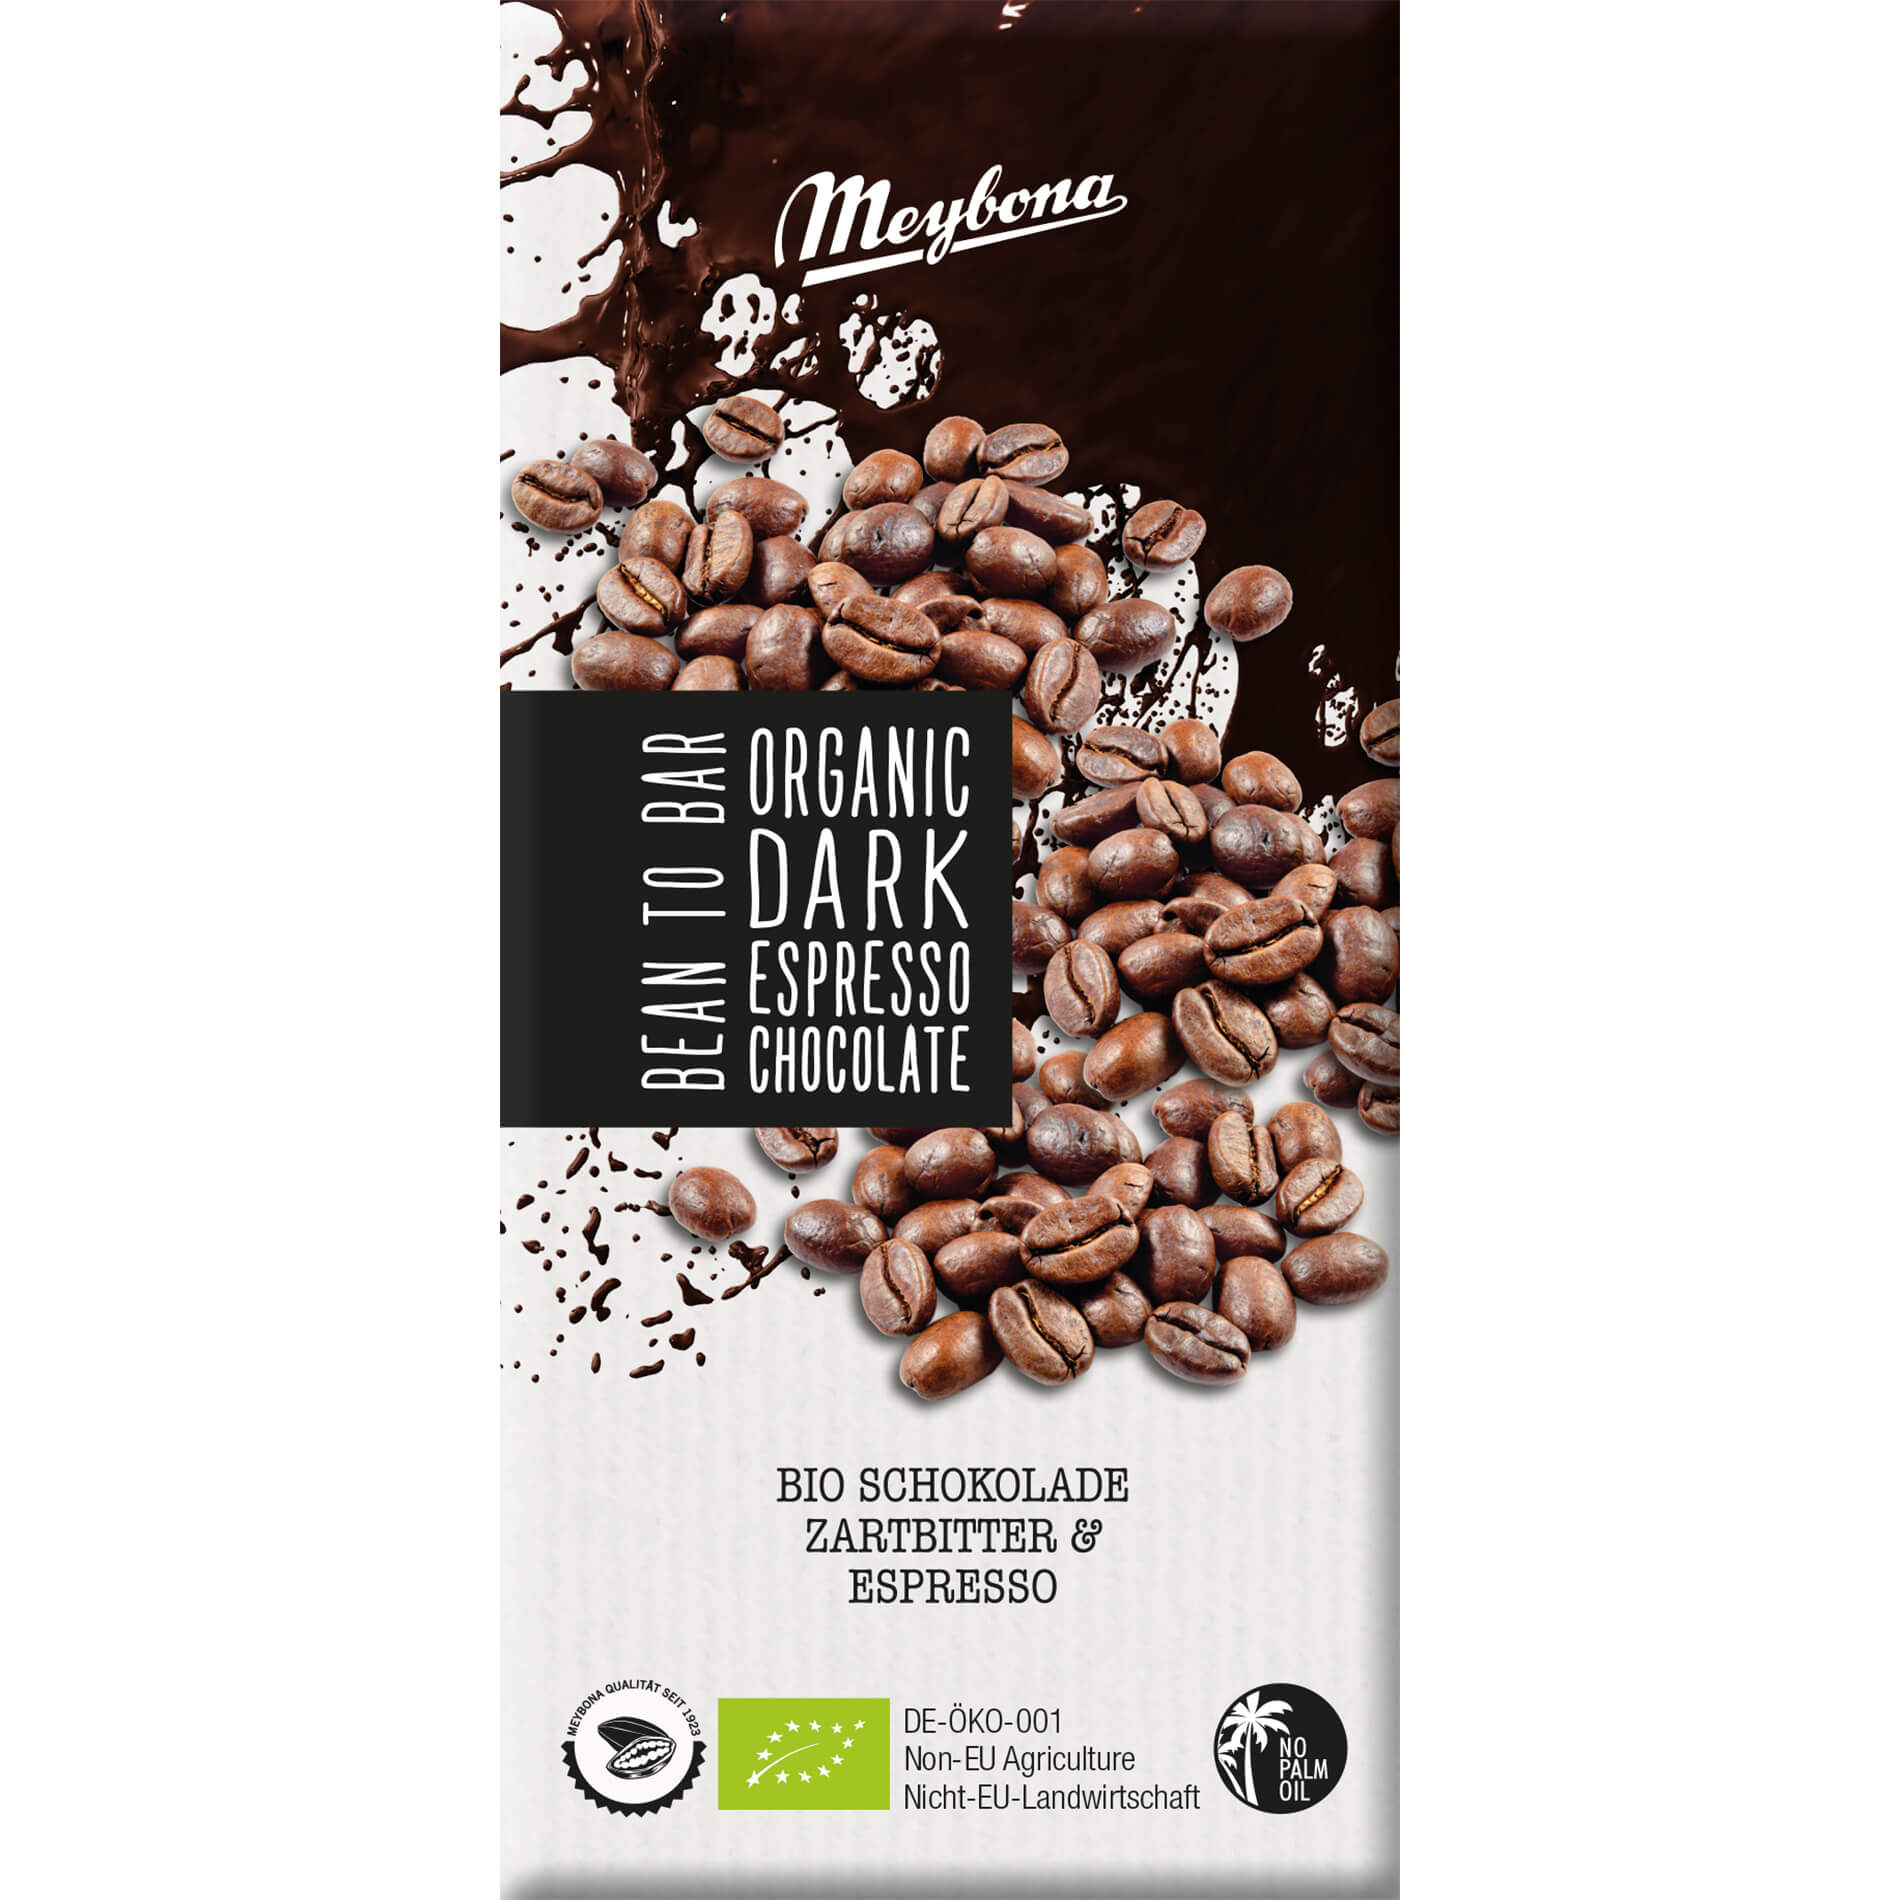 Czekolada gorzka z kruszonymi ziarnami kawy espresso BIO 100 g - Meybona